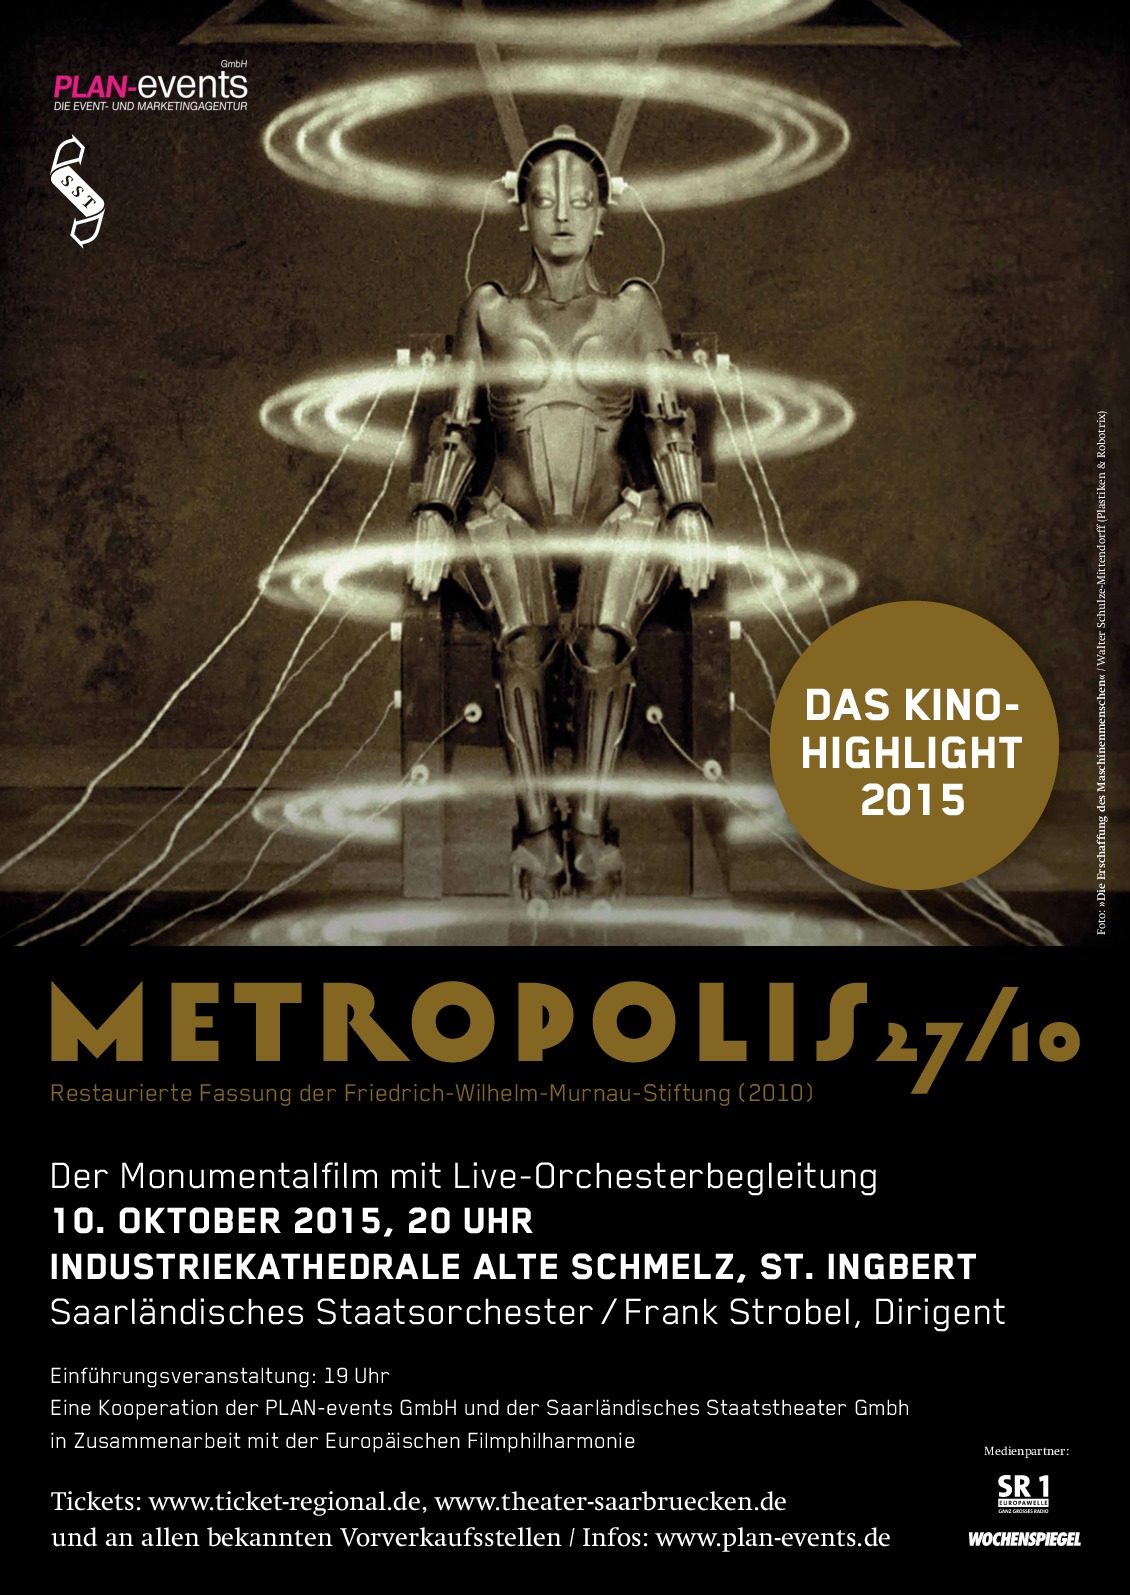 Metropolis auf großer Leinwand mit Live-Orchesterbegleitung